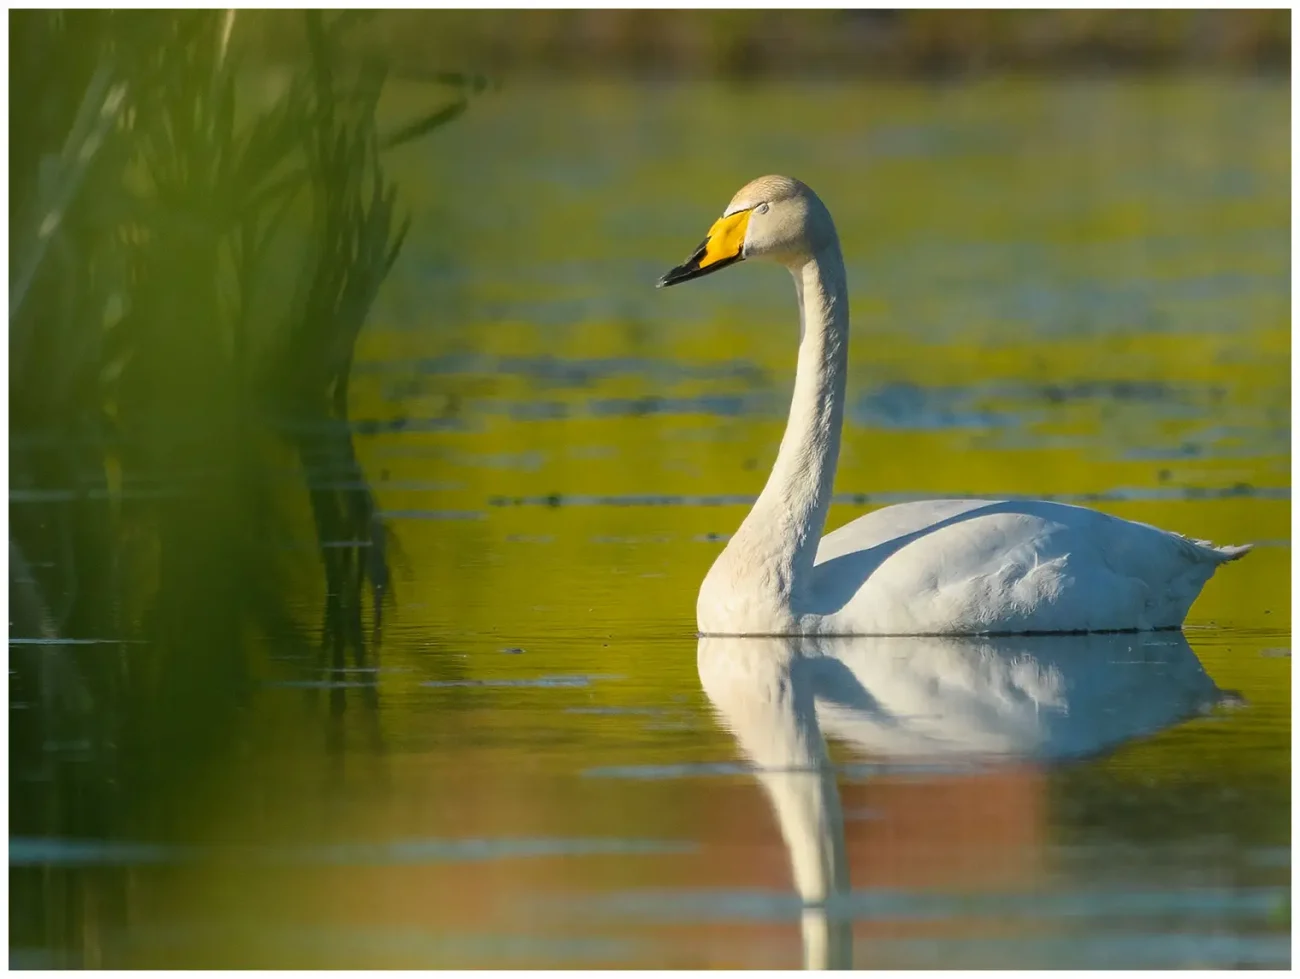 Sångsvan - Whooper Swan - i en damm och blundar